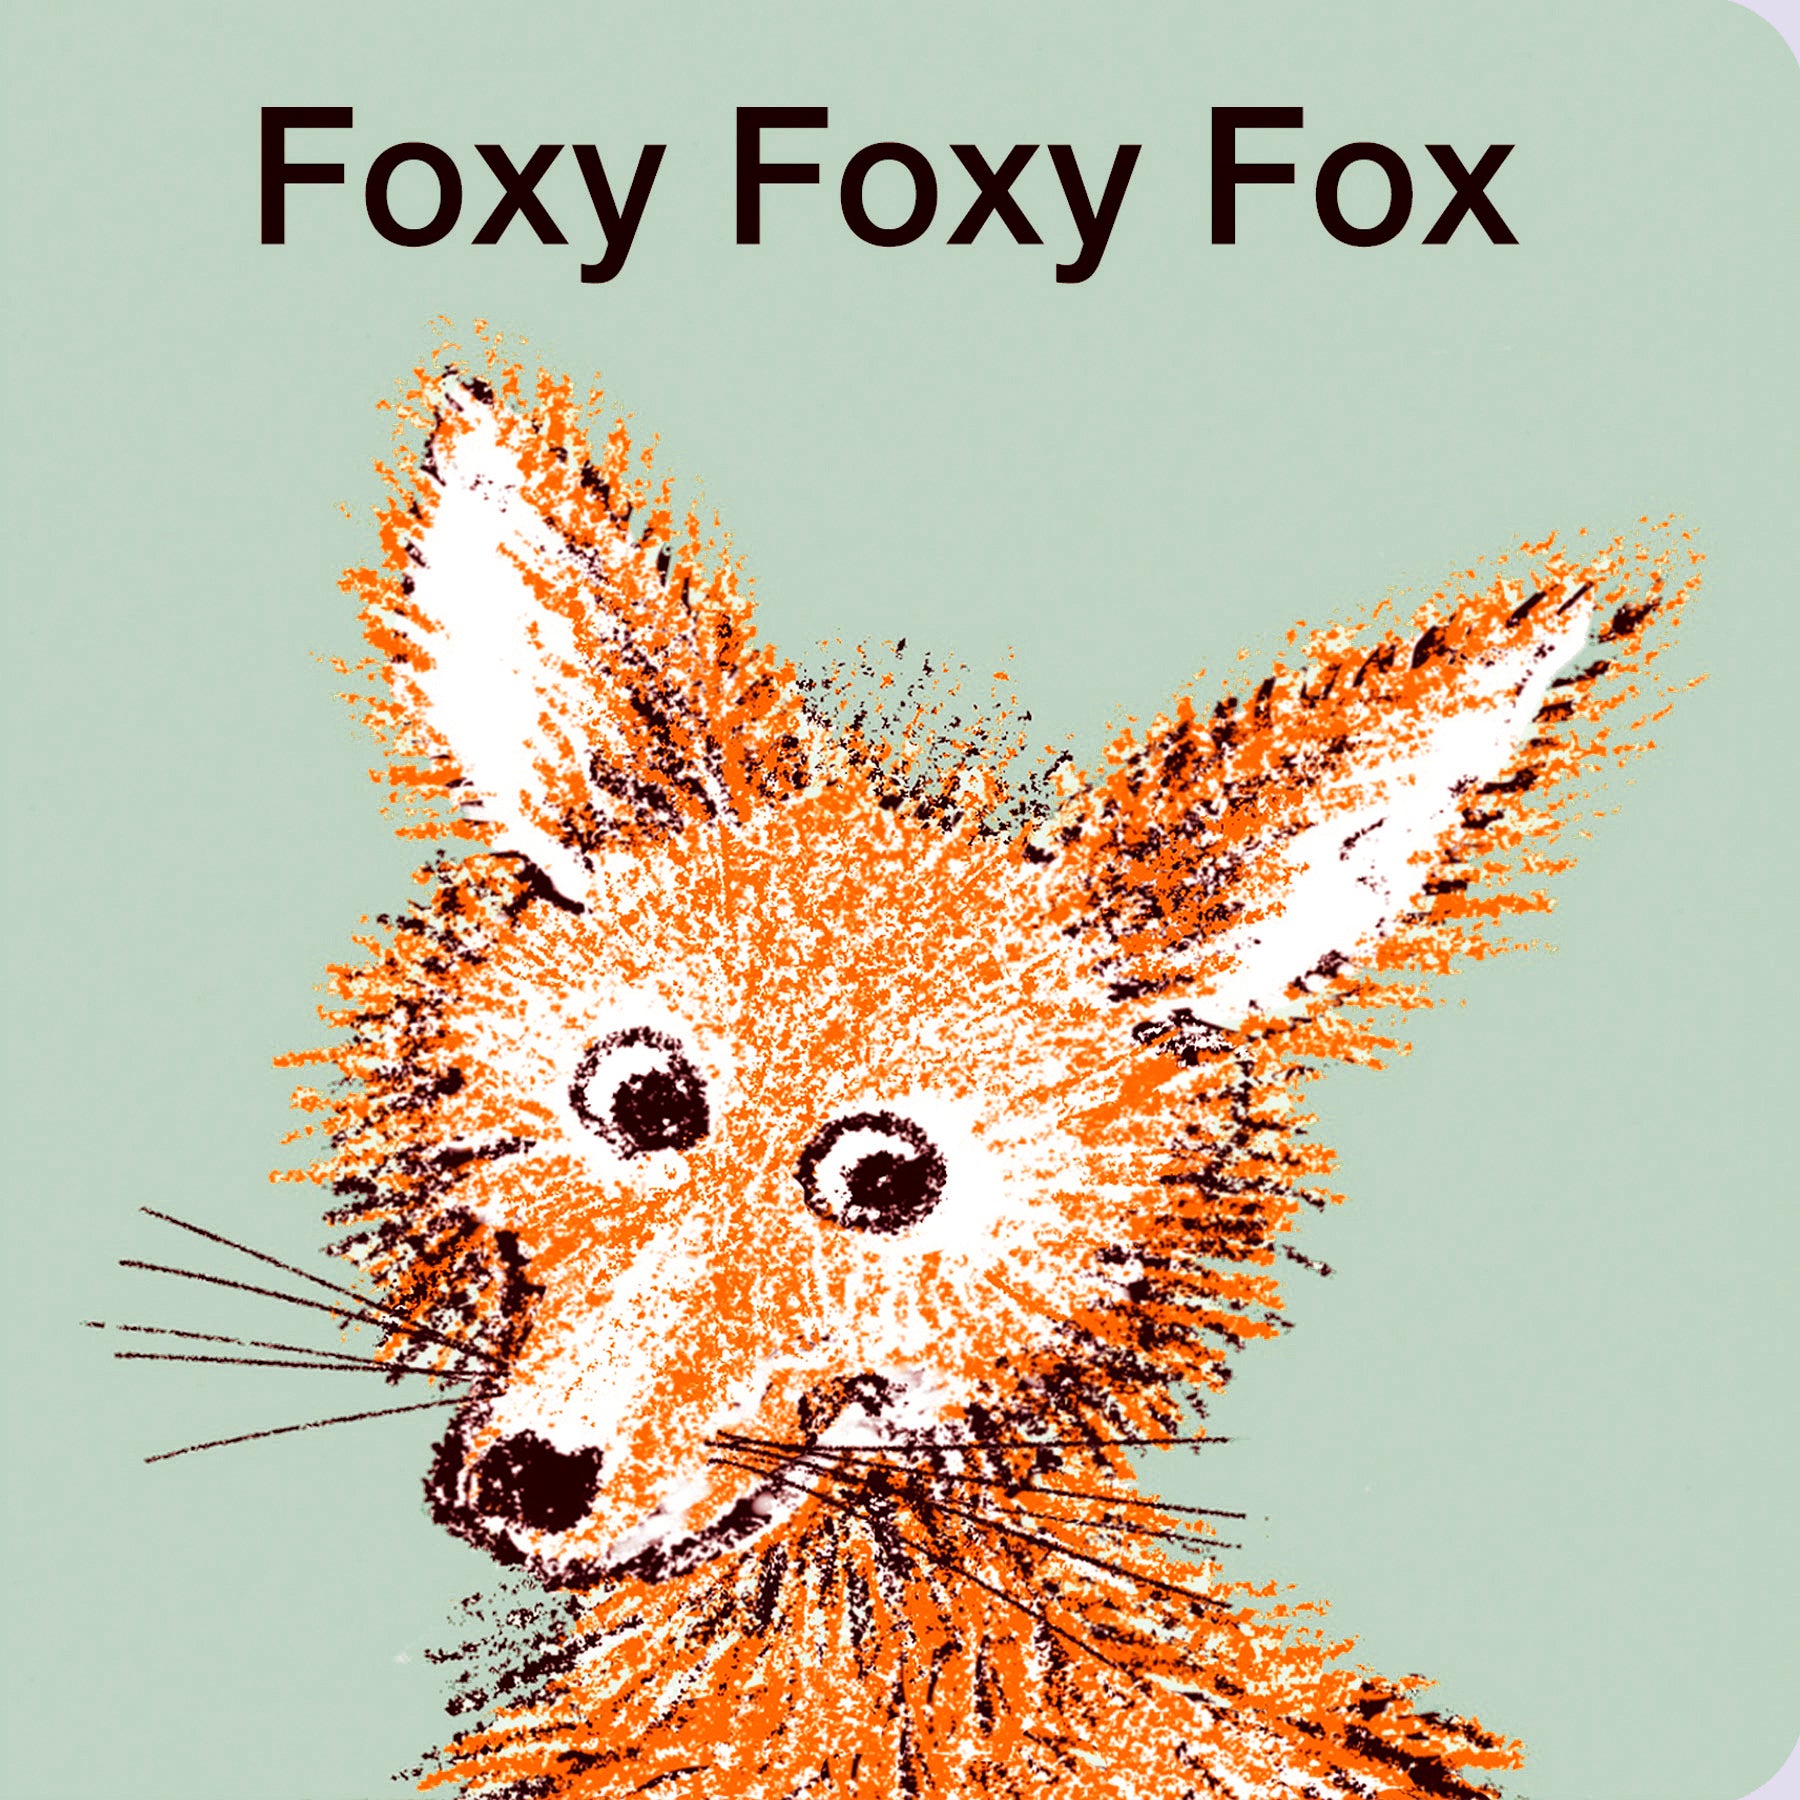 Foxy Foxy Fox